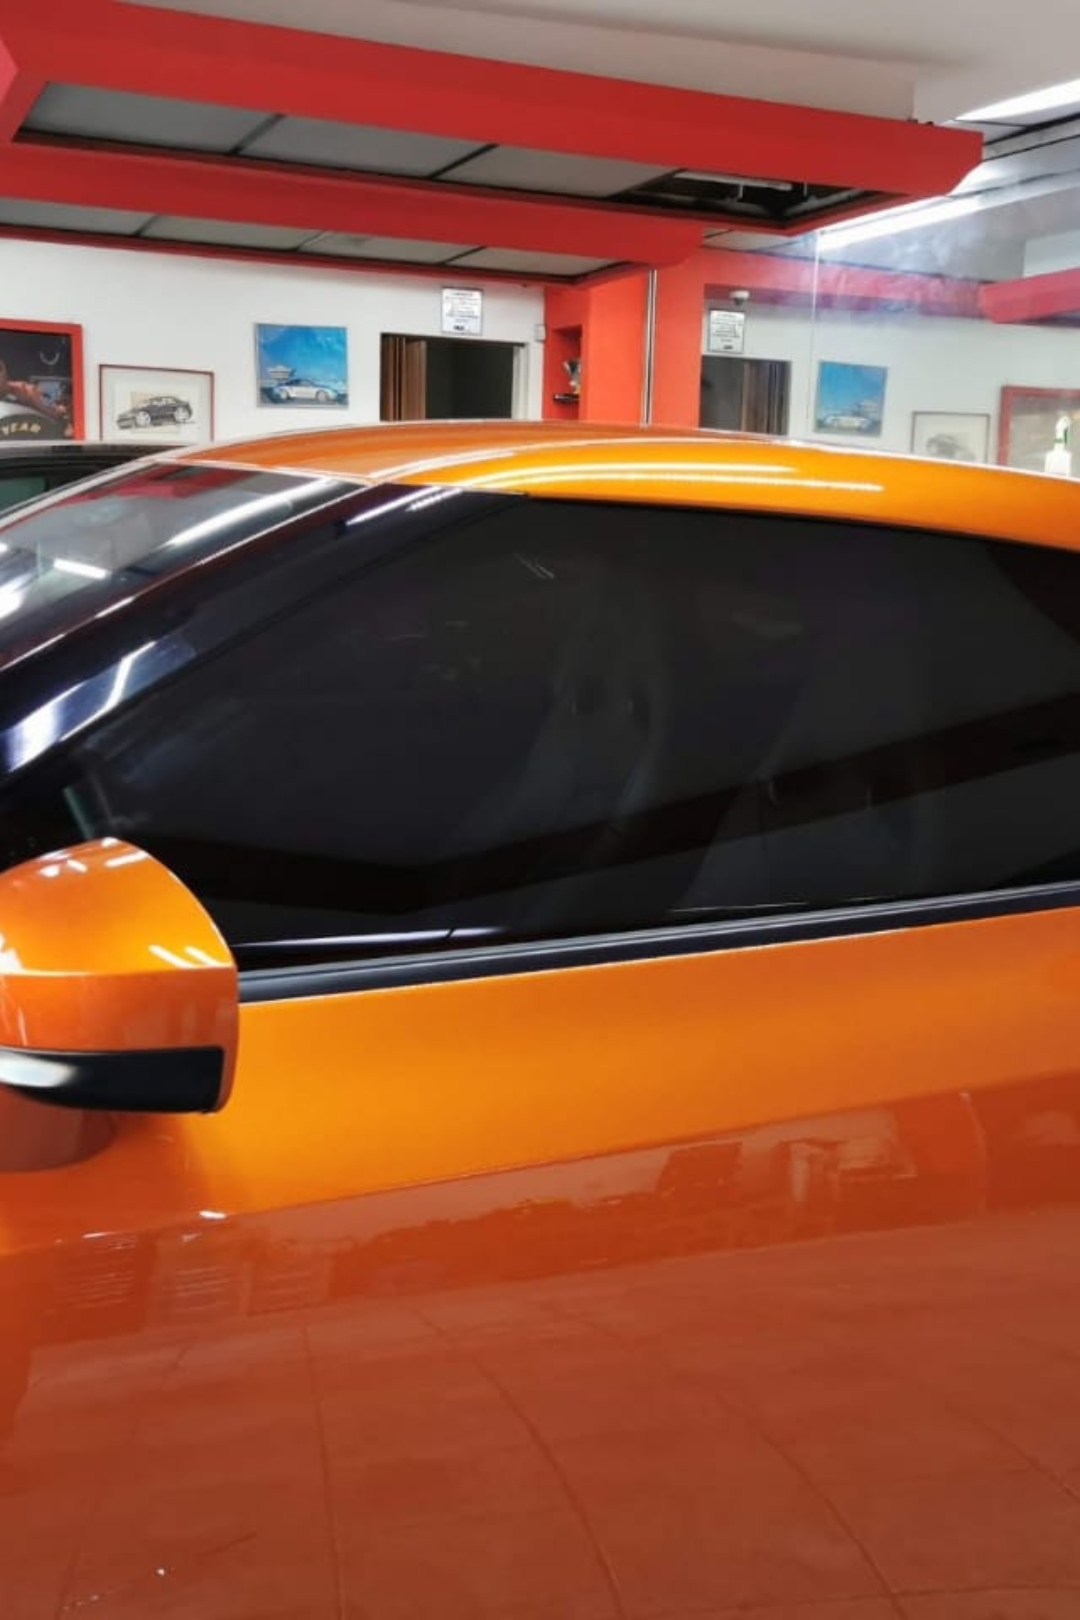 Instalación de la película de control solar Crystalline de 3M por BackStage automotive, mejora la comodidad y protección en tu vehículo con nuestra especialidad en películas de alta calidad.